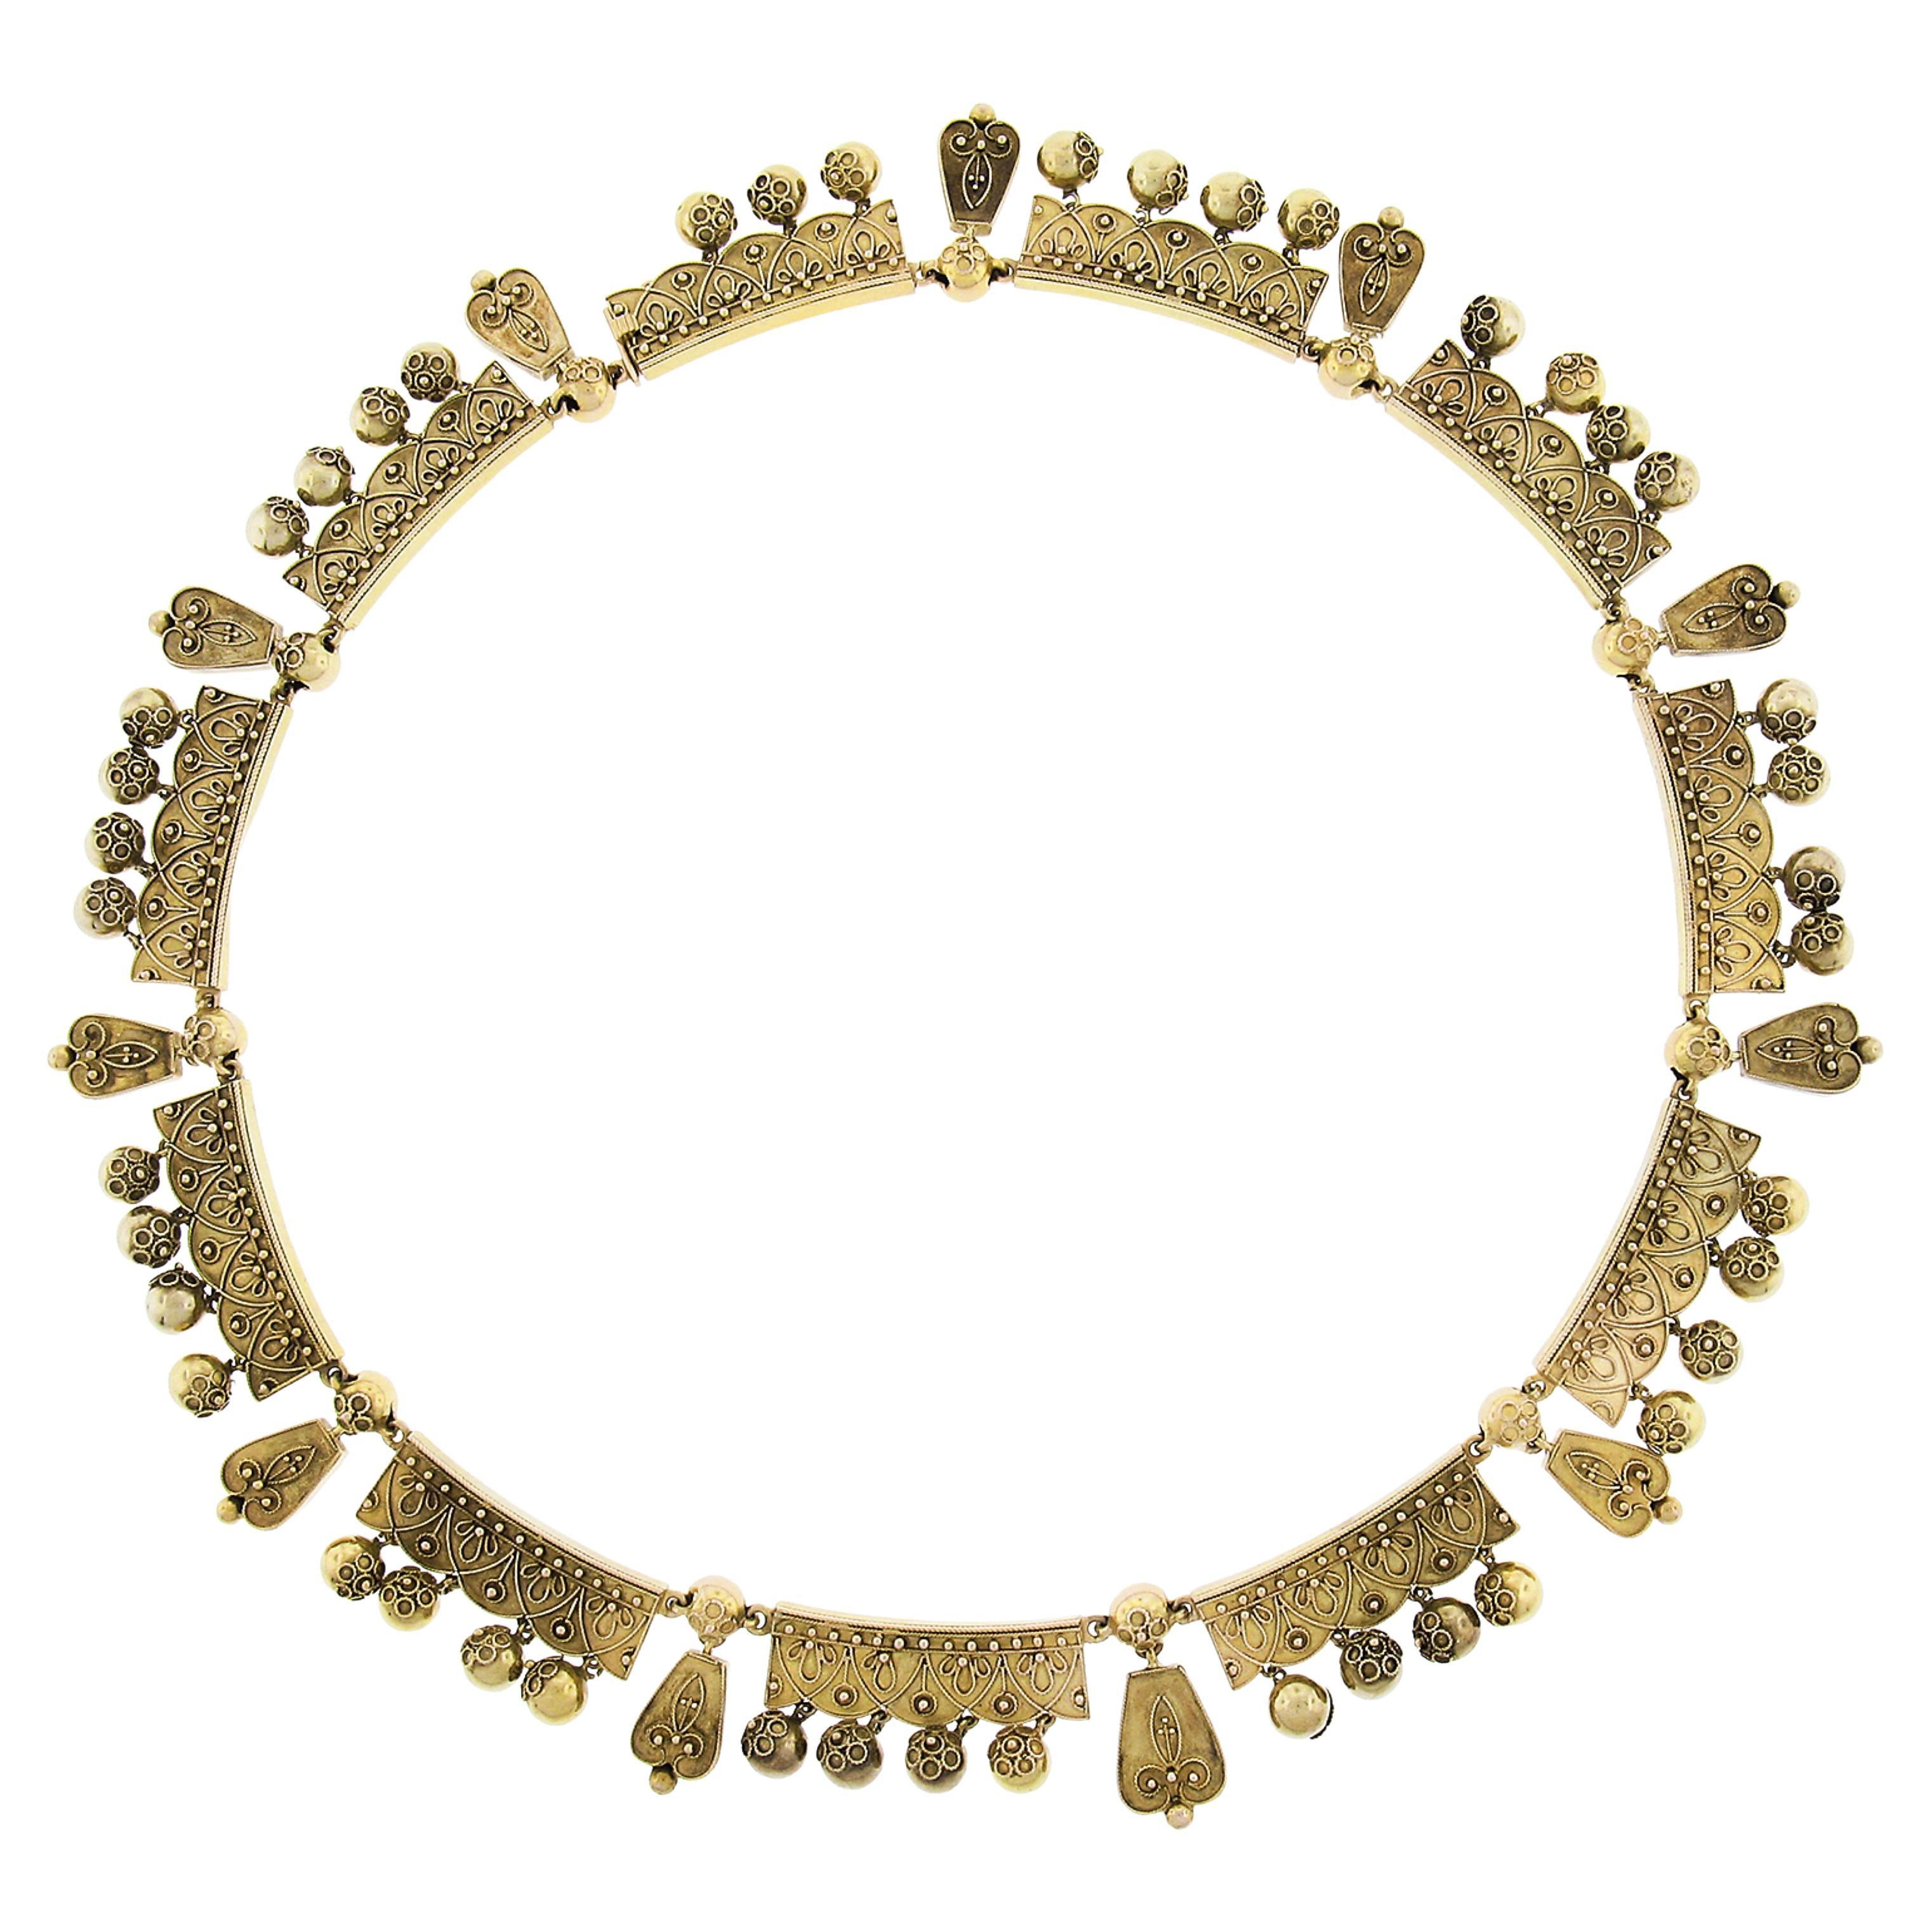 Chaîne collier pivotante en or jaune 18 carats et cannetille ancienne de style néo-étrusque